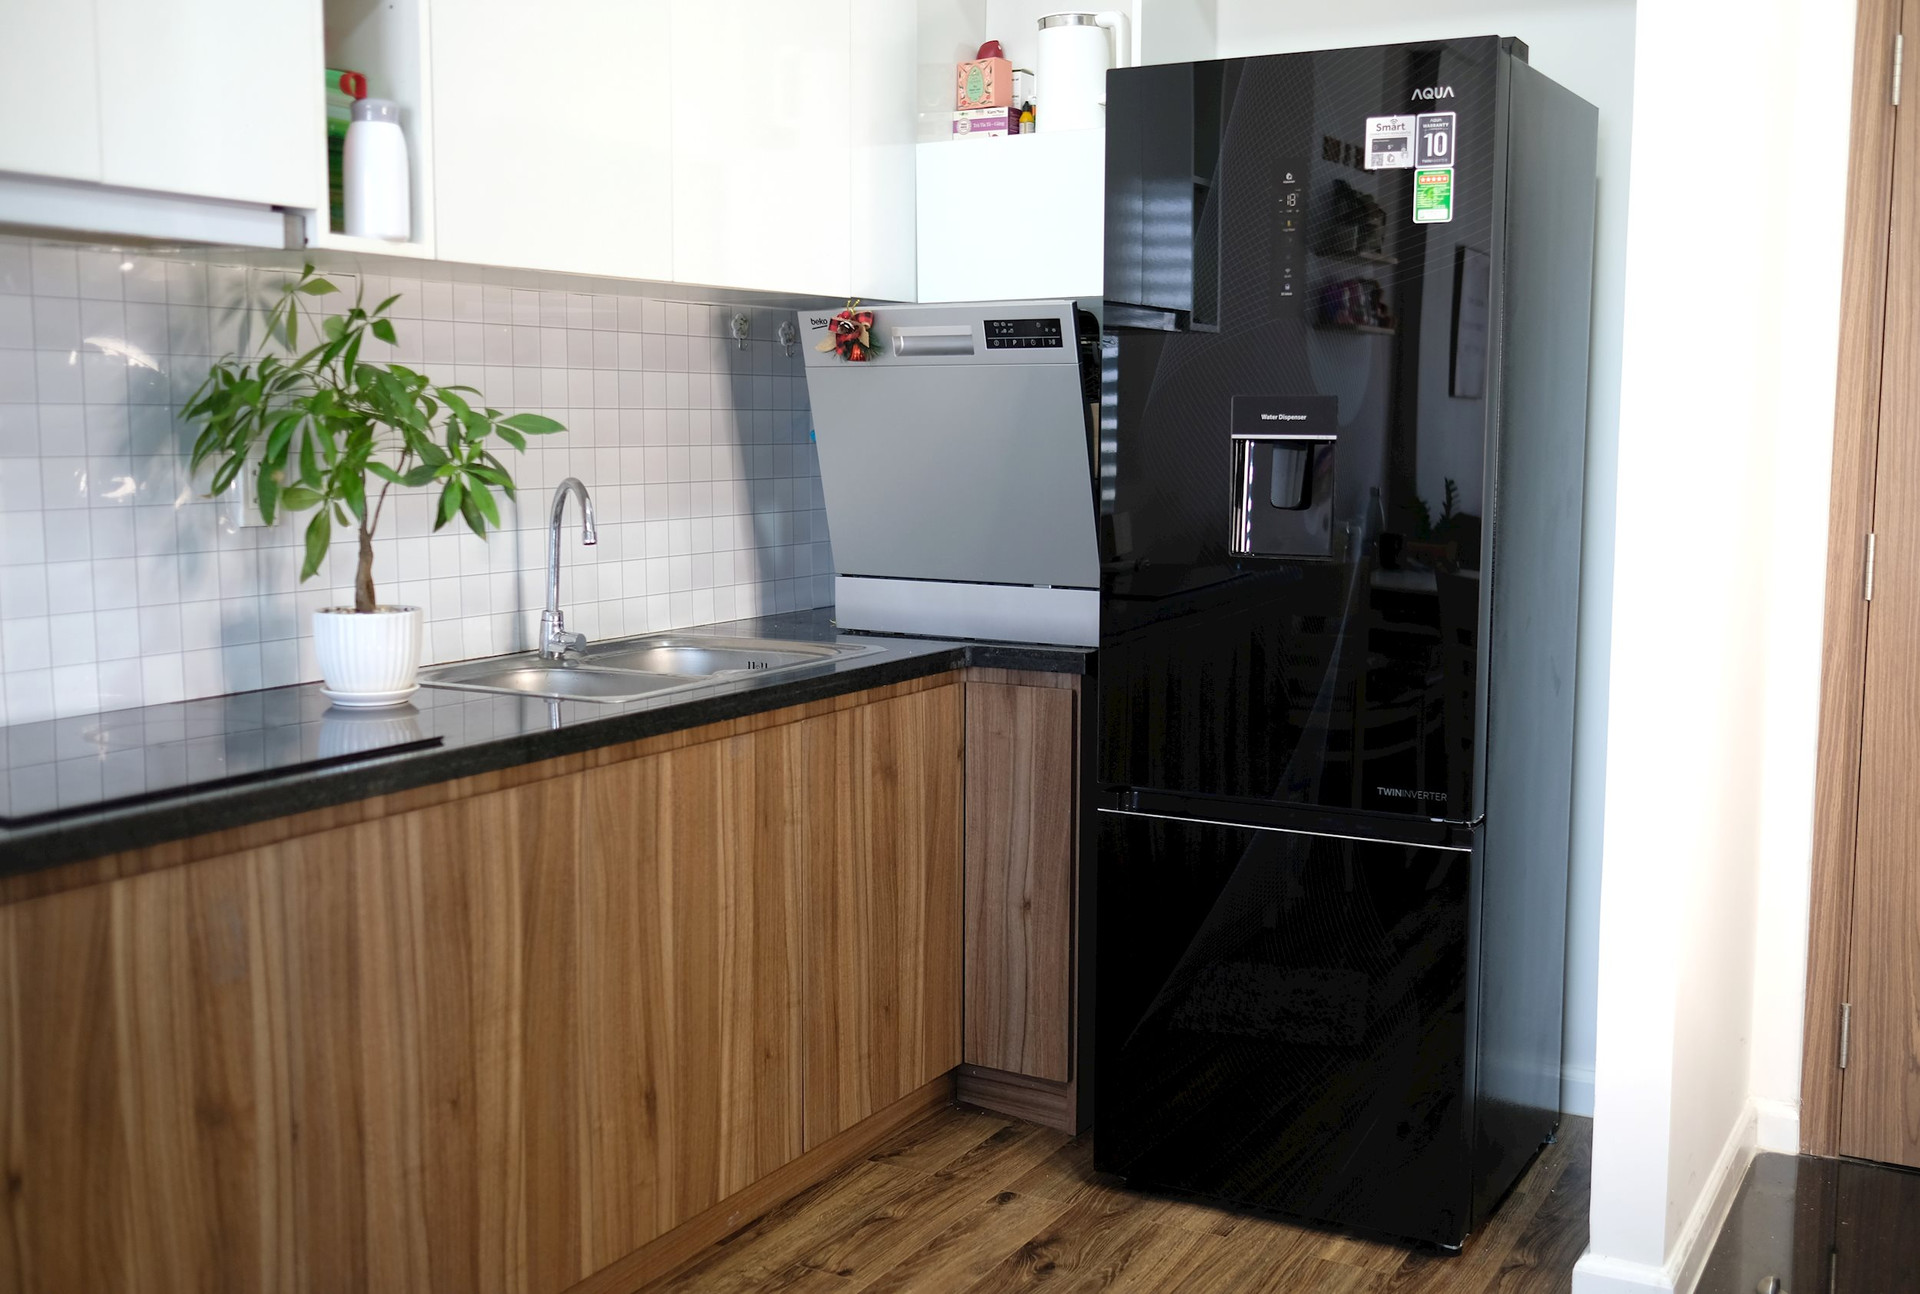 Đây là mẫu tủ lạnh 'ngon-bổ-rẻ' từ Aqua với ngăn đông dưới, thiết kế Color AI độc đáo, giá 15 triệu đồng 